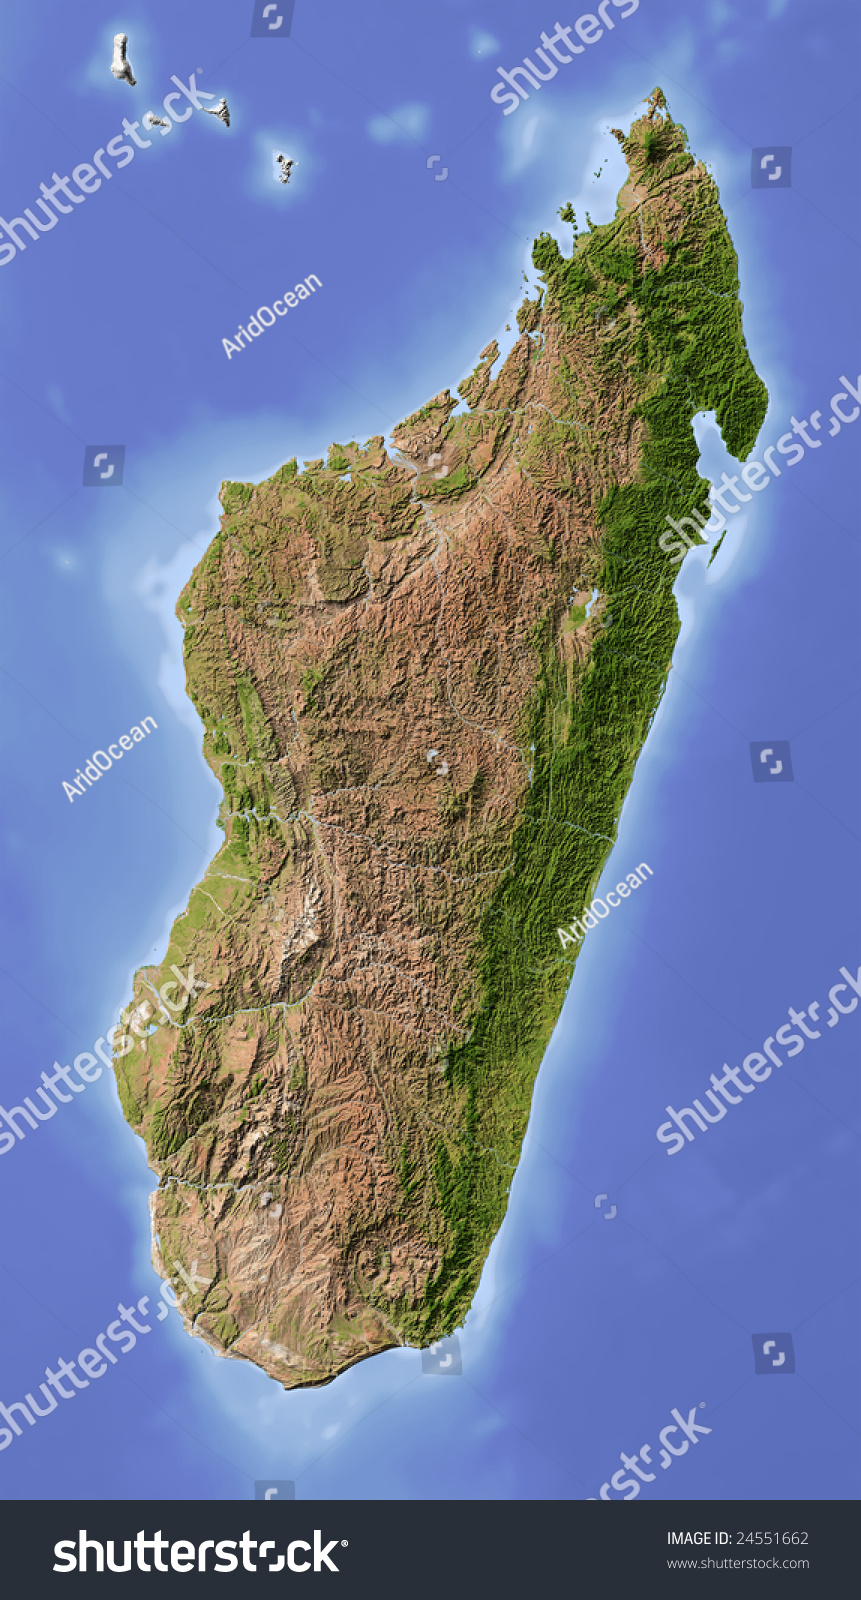 Мадагаскар остров фото на карте